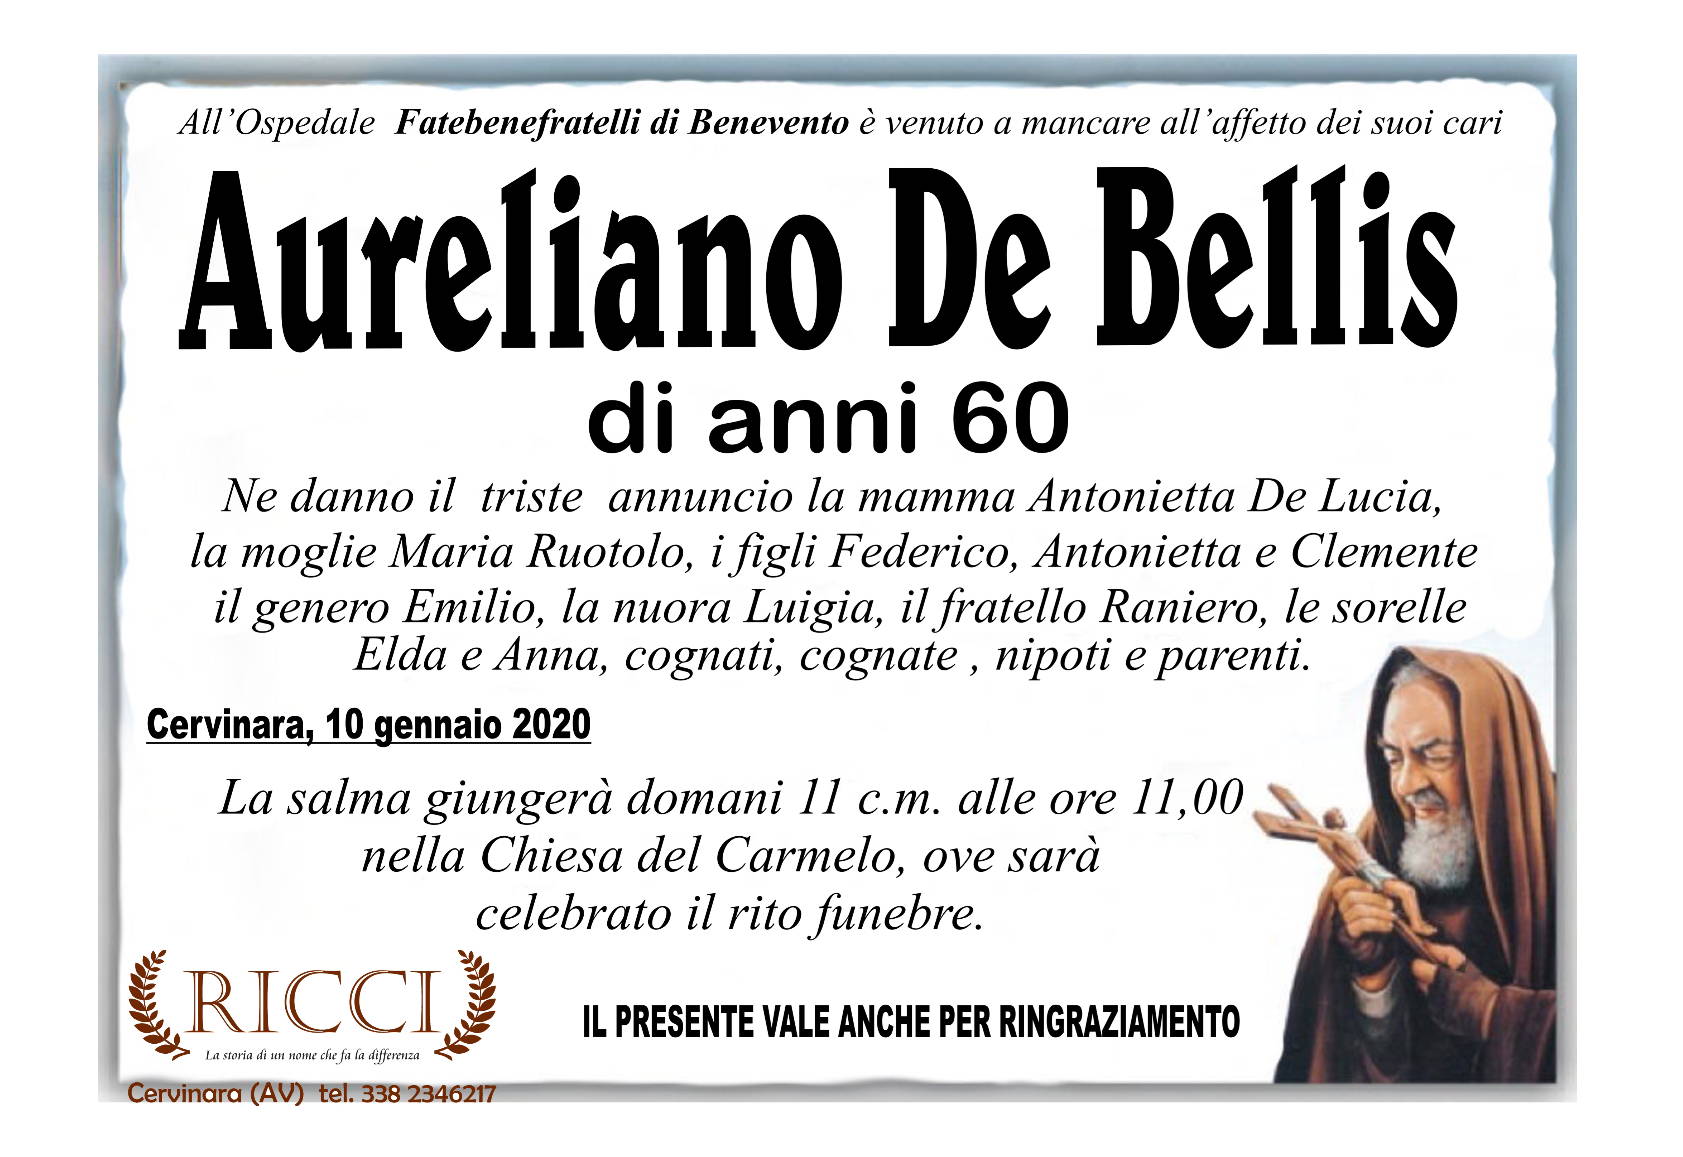 Aureliano De Bellis